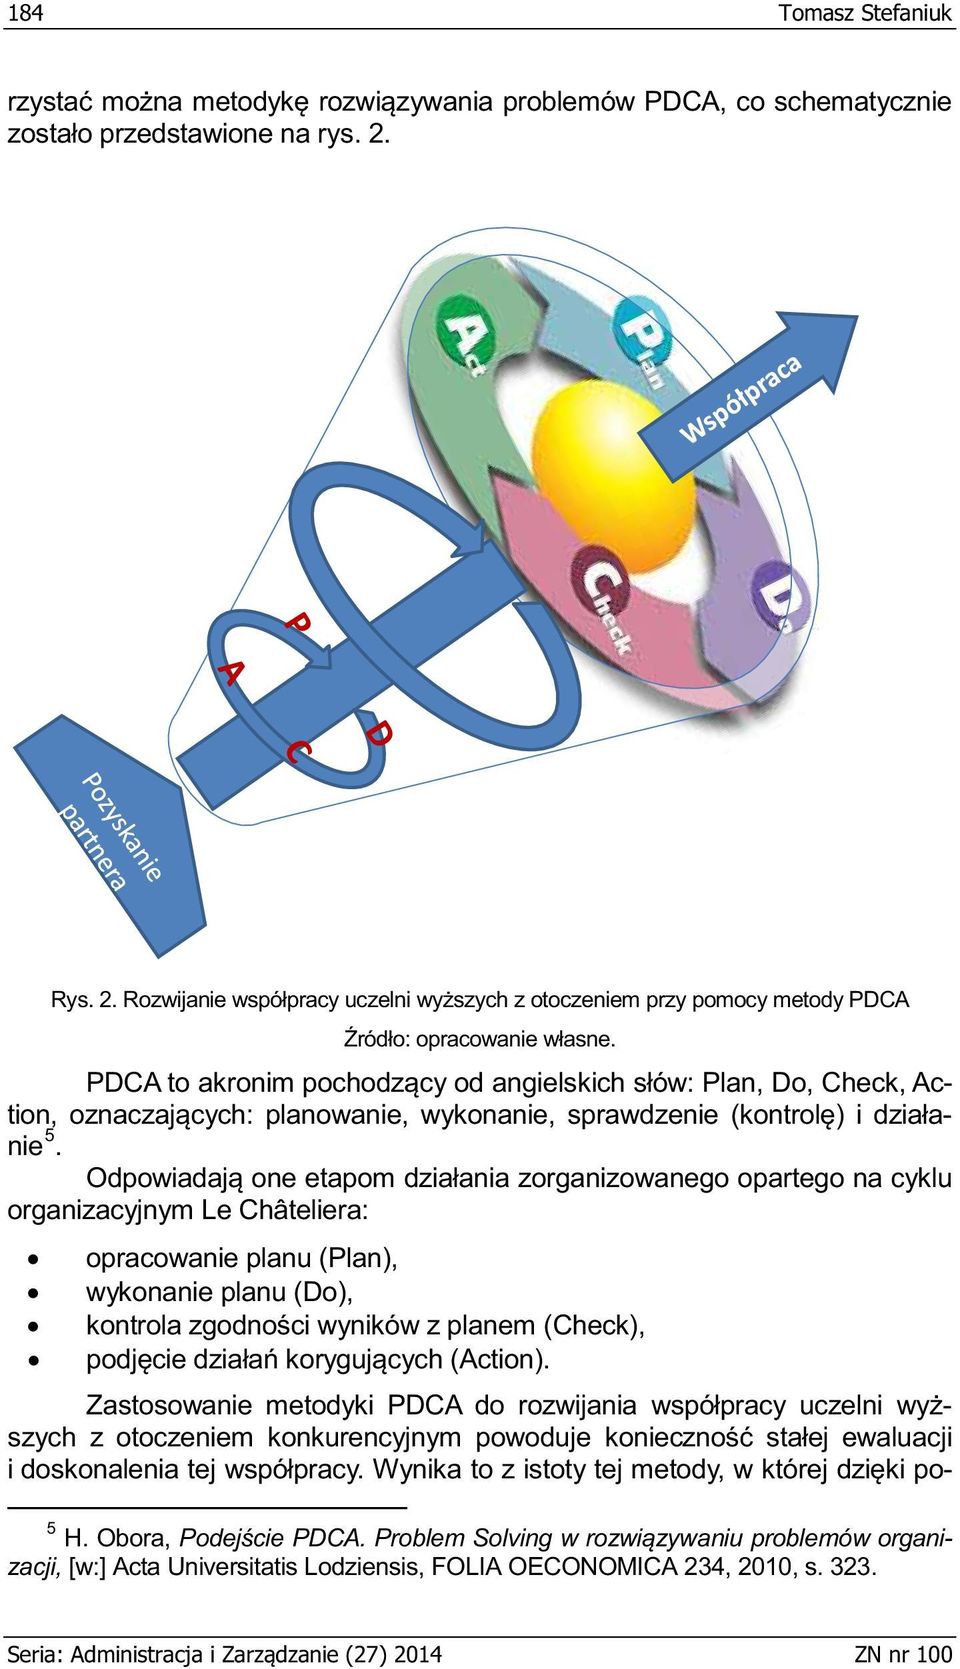 (Do), Zastosowanie metodyki PDCA do szych z otoczeniem konkurencyjnym